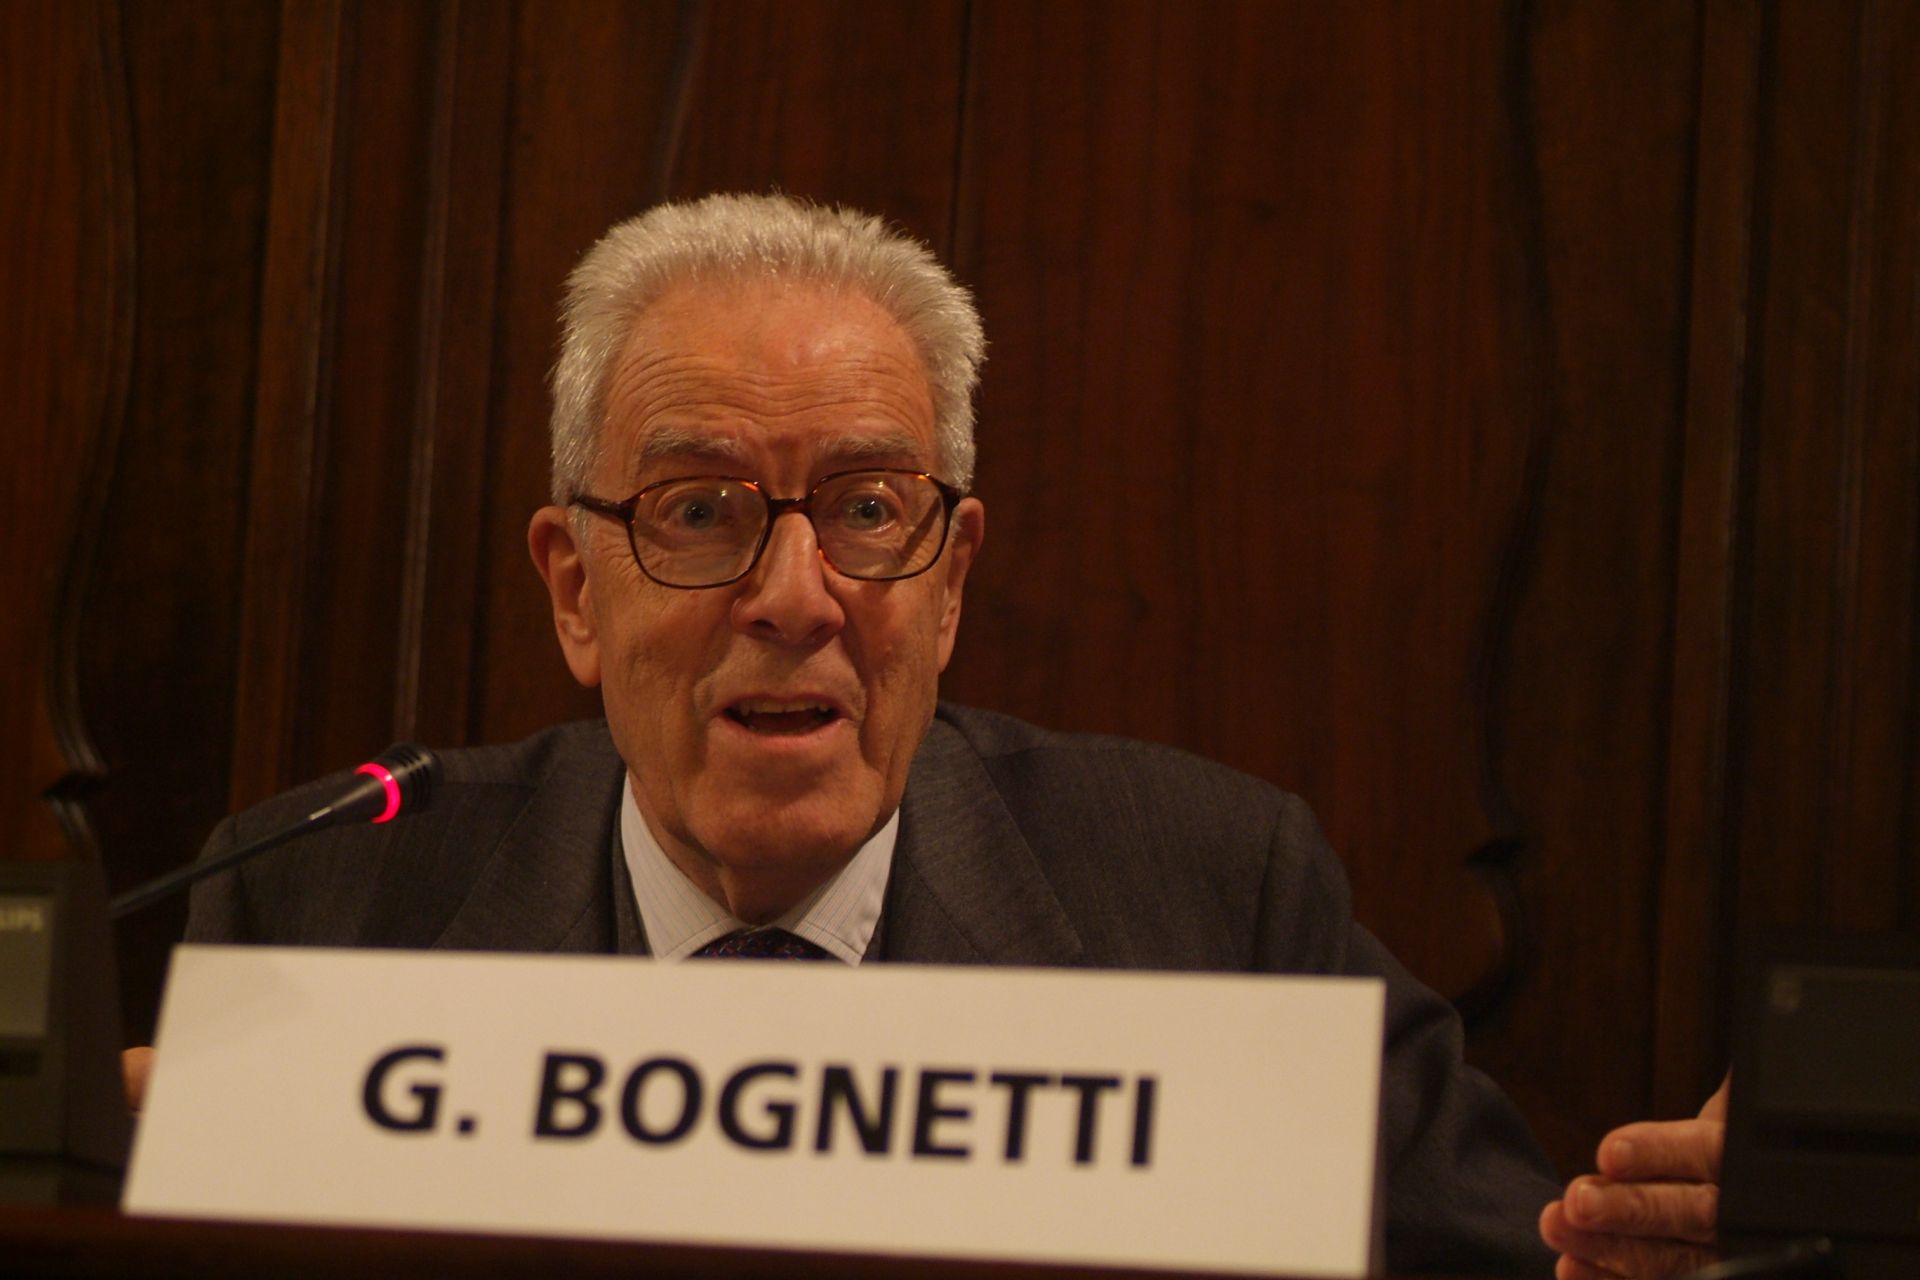 Giovanni Bognetti